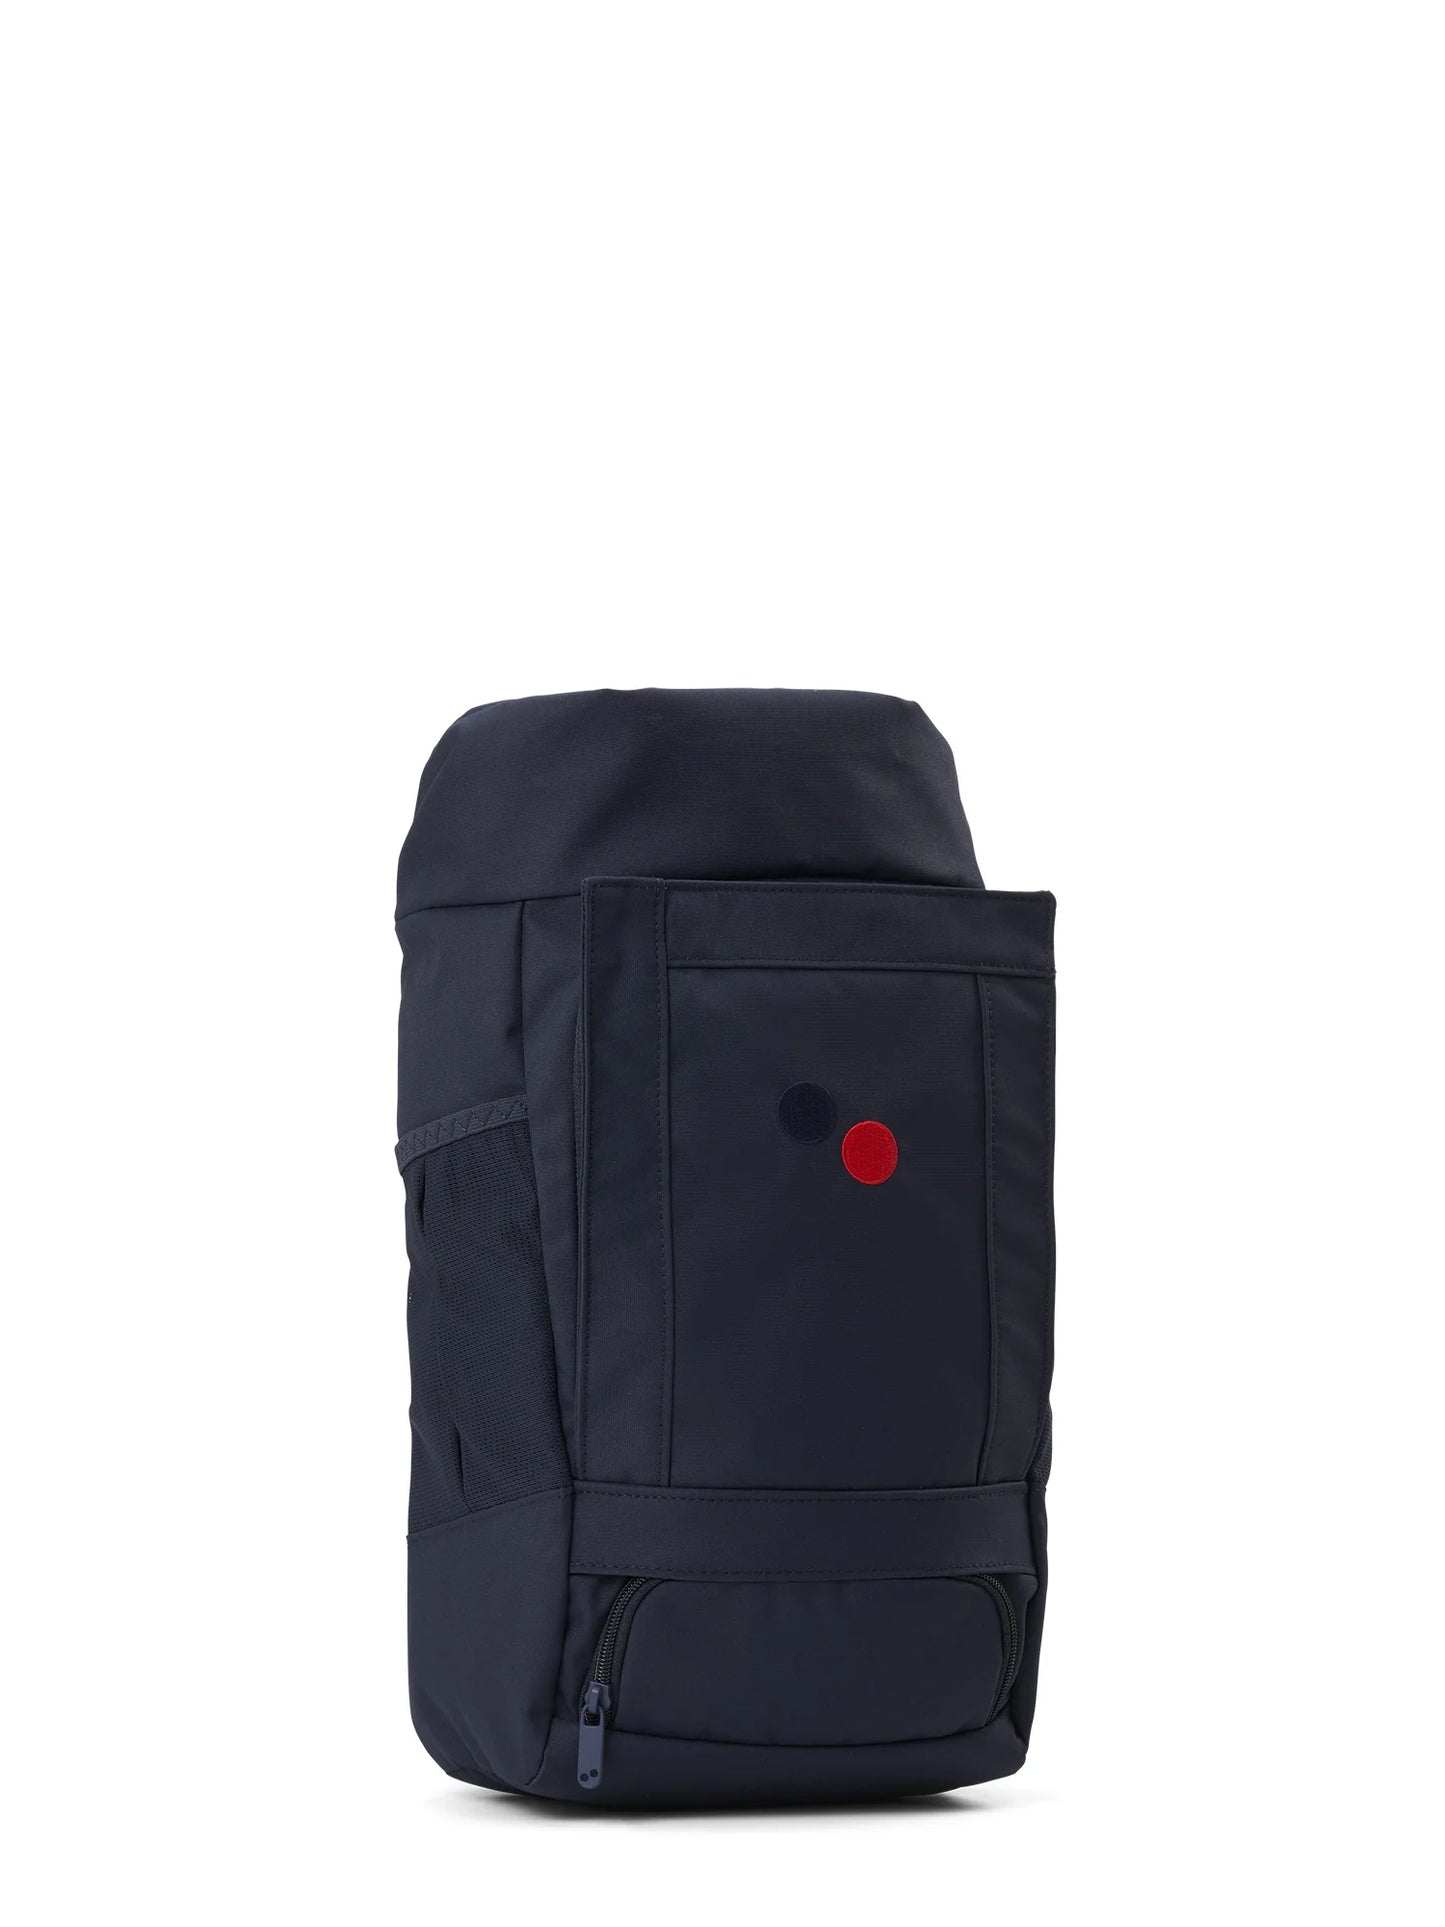 Blok Mini Backpack - Fjord Navy